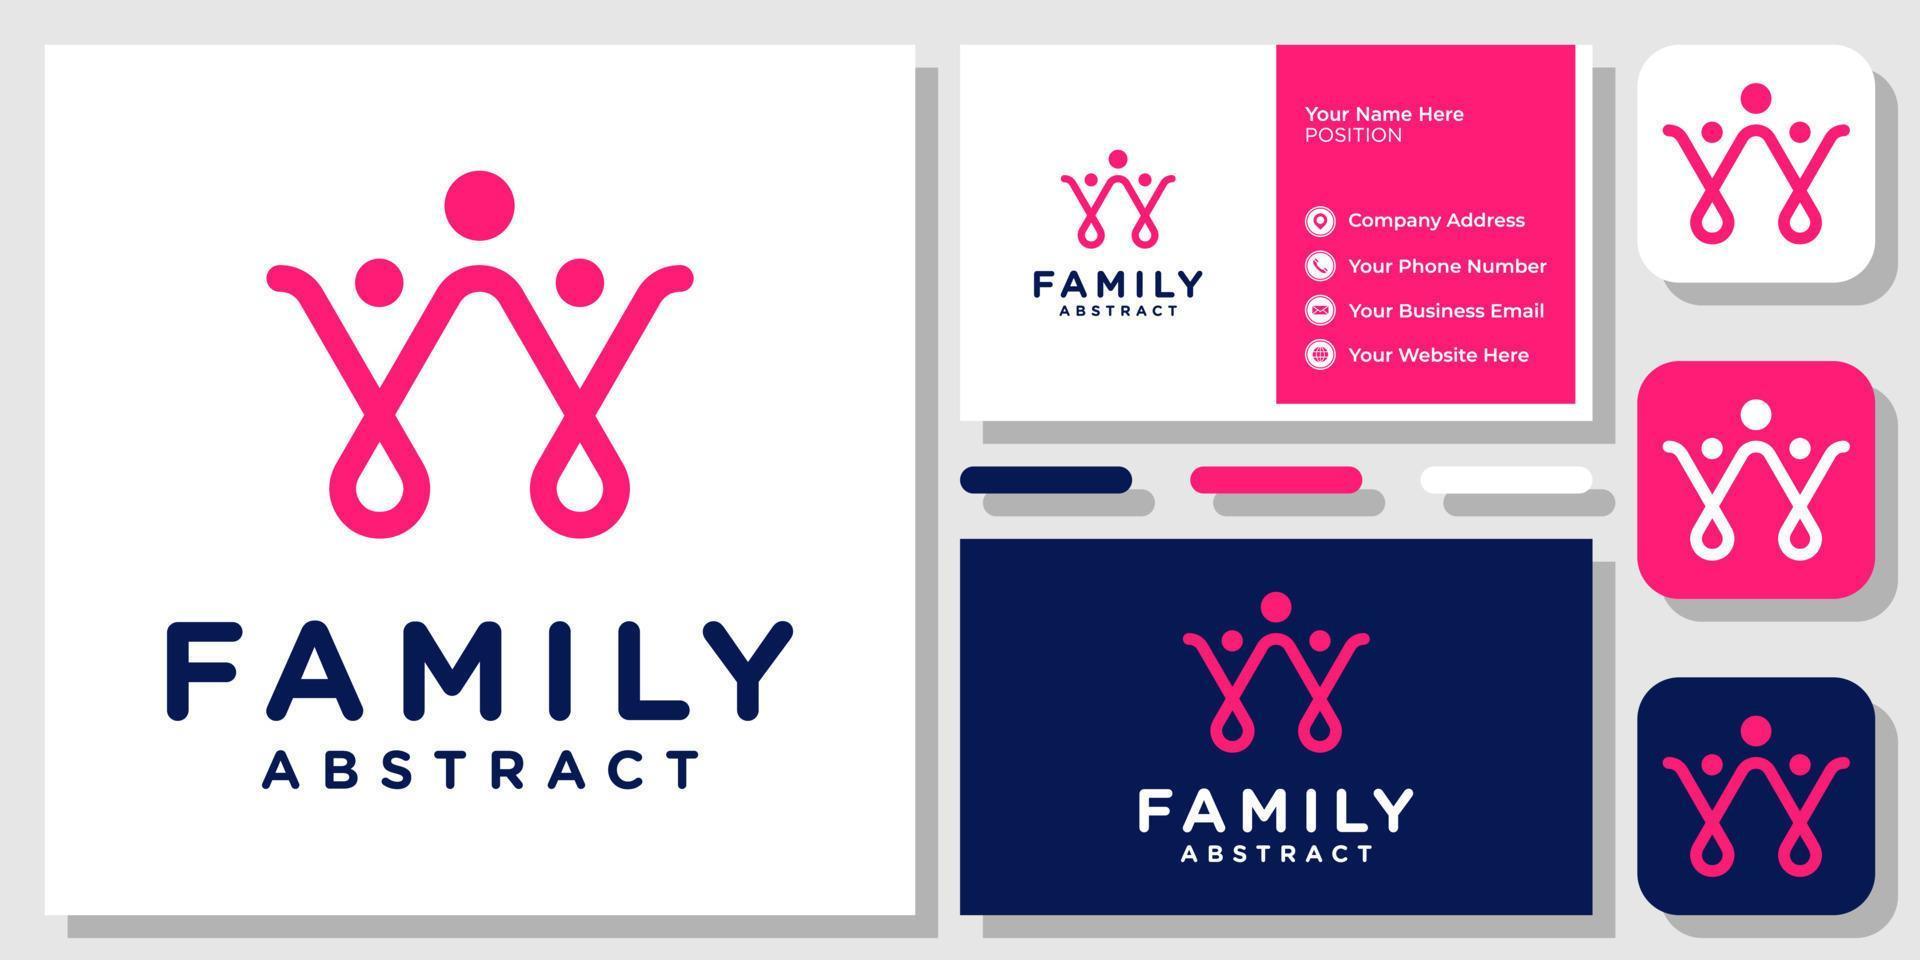 abstract gelukkig gezin mensen gemeenschap eenheid zorg liefde vriendschap logo ontwerp sjabloon voor visitekaartjes vector